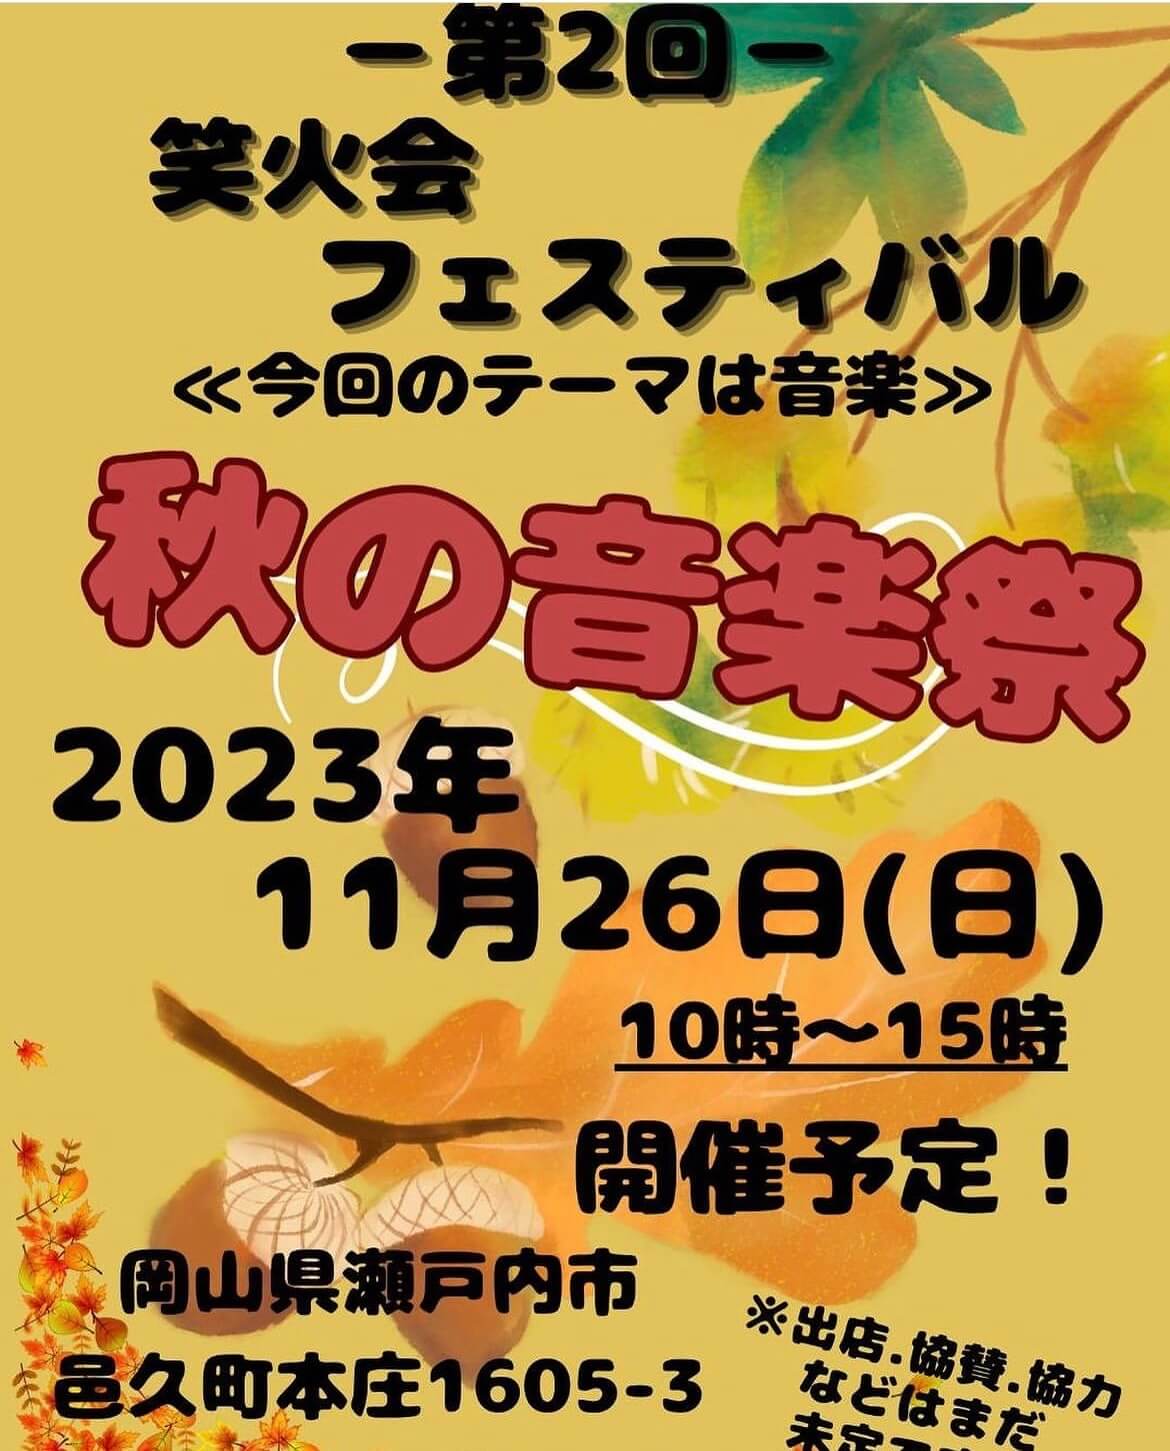 メダカ販売イベントのチラシ(2023年11月開催)